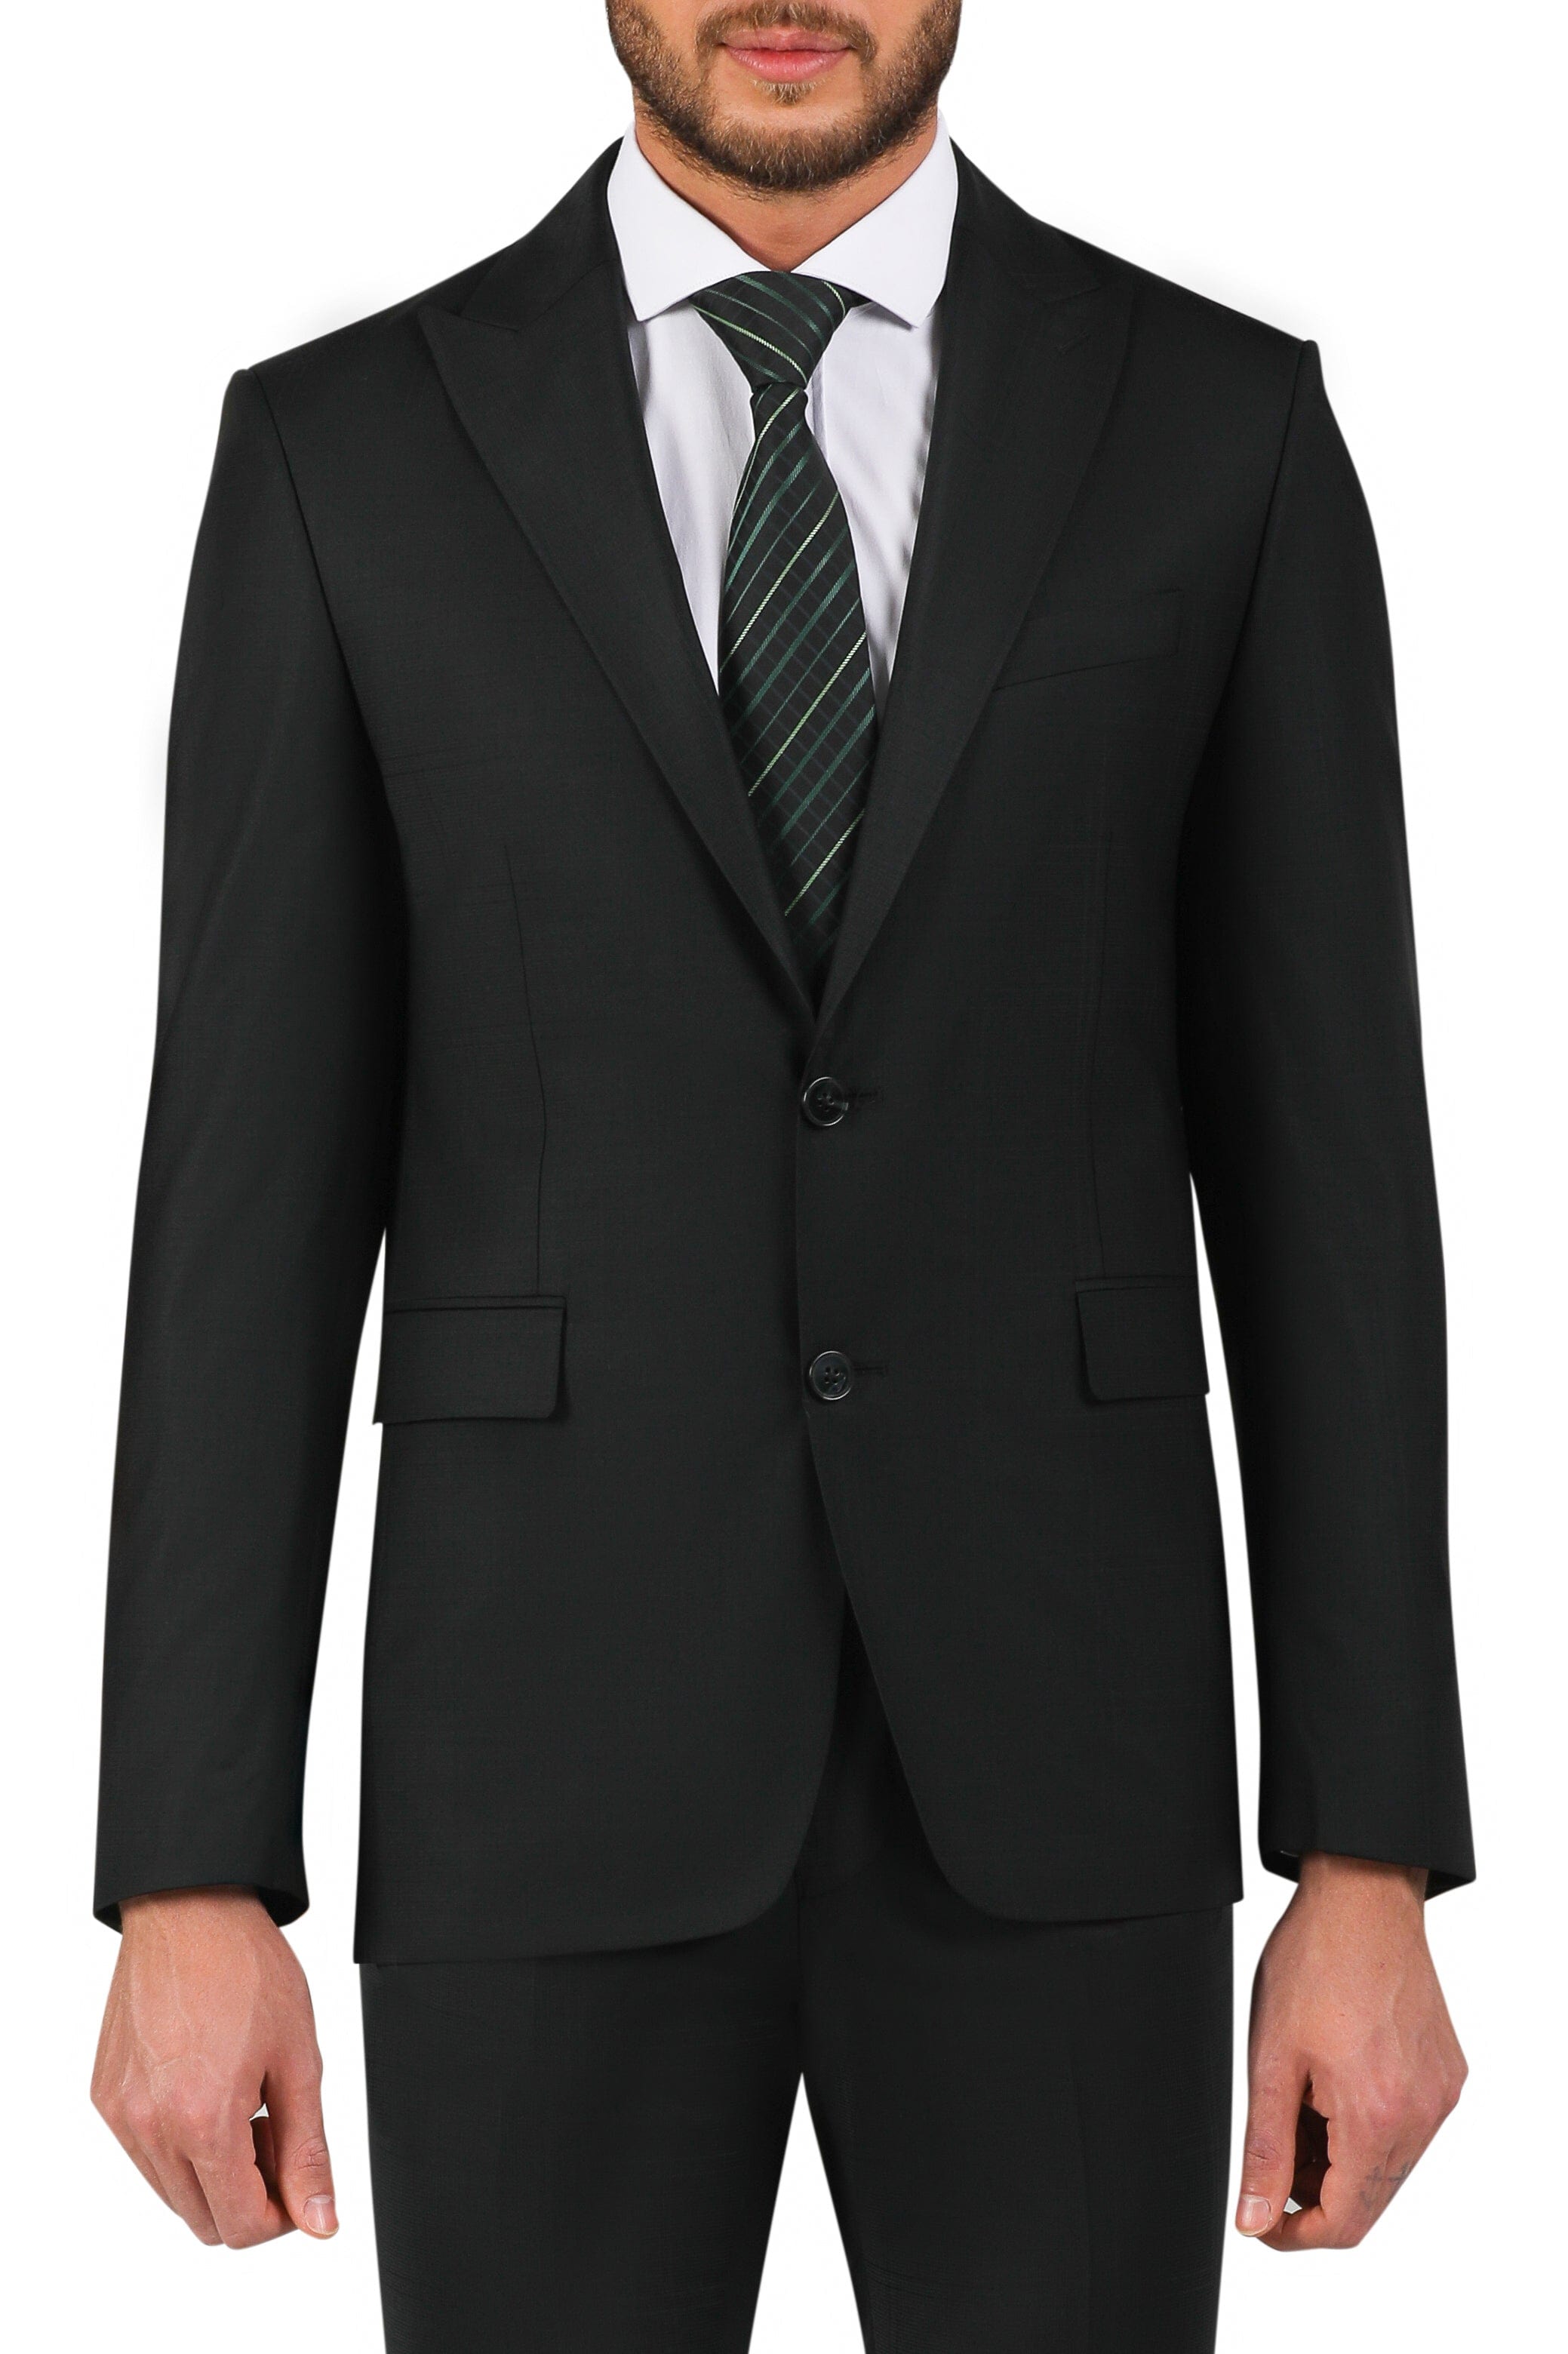 Should You Buy a Black Suit?